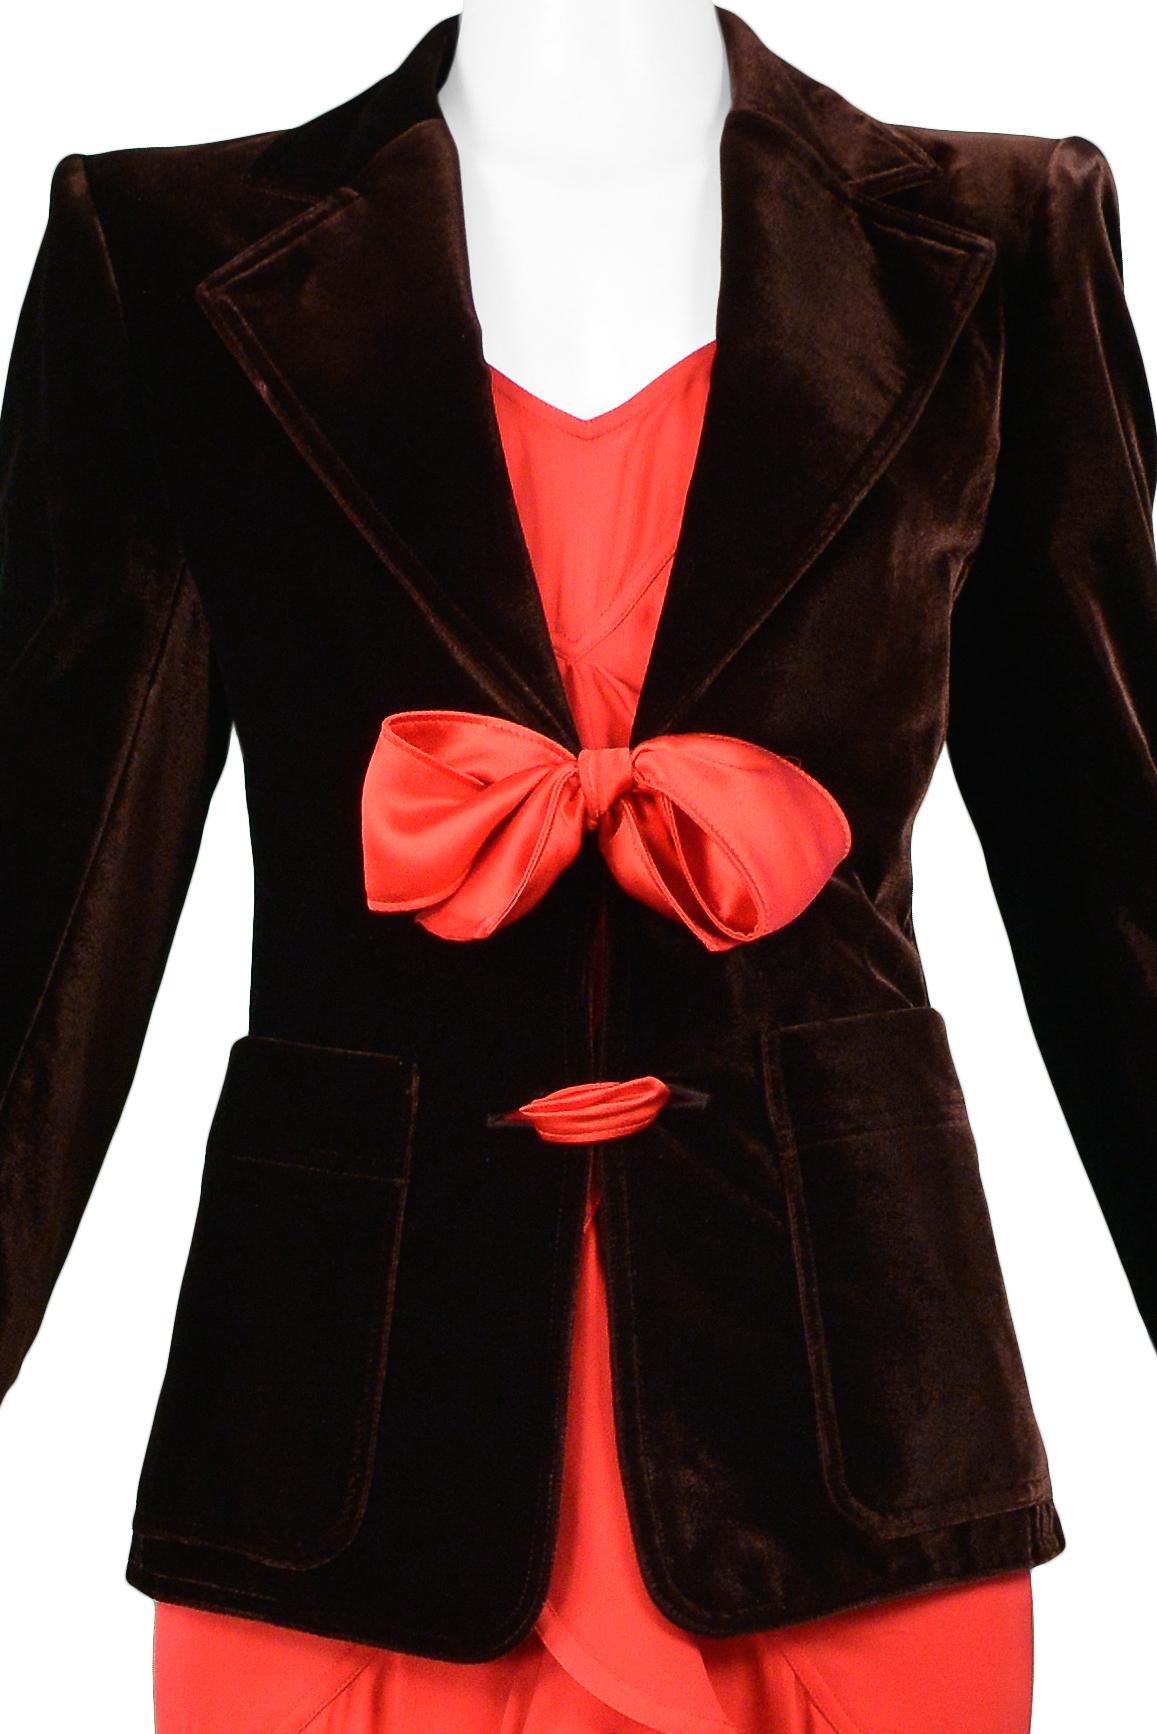 Black Vintage Tom Ford For YSL Brown Velvet Blazer & Red Ruffle Dress Ensemble 2003